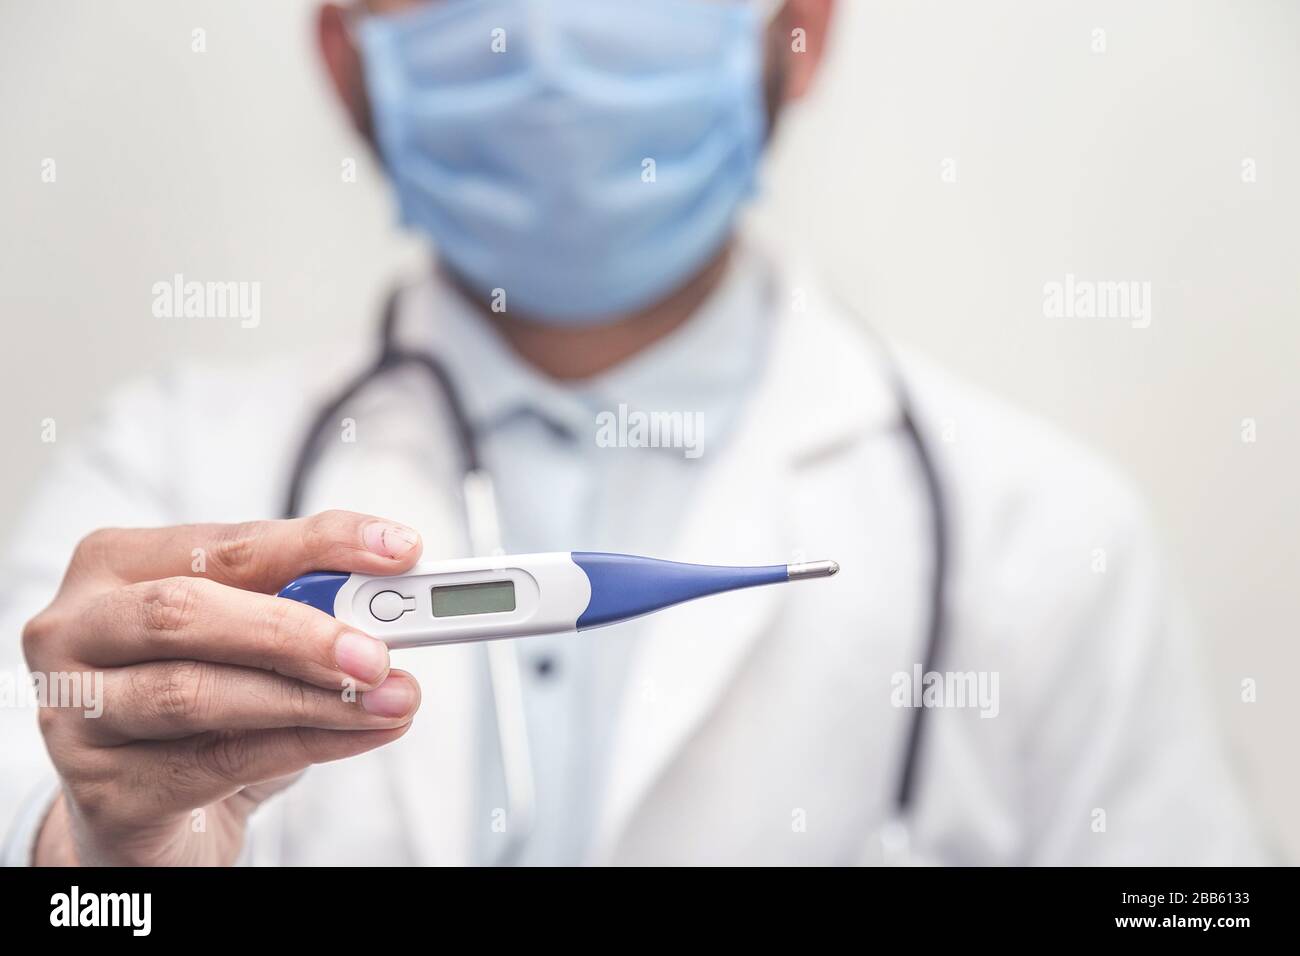 Das mit Stethoskop dossende medizinische Digitalthermometer misst die Körpertemperatur, den Schutz vor Viren, Grippe und Atemwegserkrankungen. Coron Stockfoto